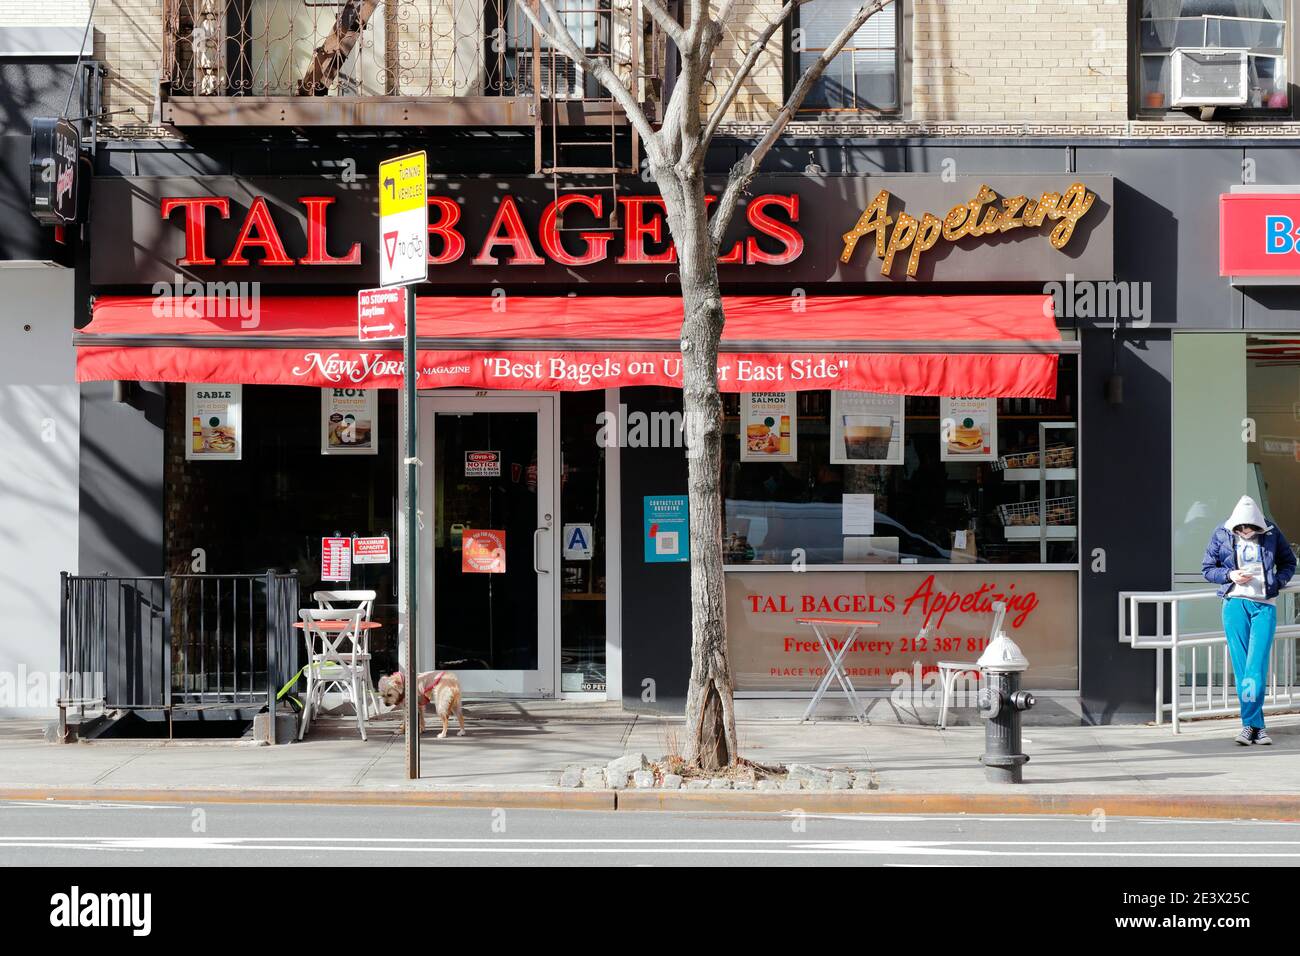 Tal bagels, 357 First Ave, New York, NY. Façade extérieure d'une boutique de bagels dans le quartier Gramercy de Manhattan. Banque D'Images